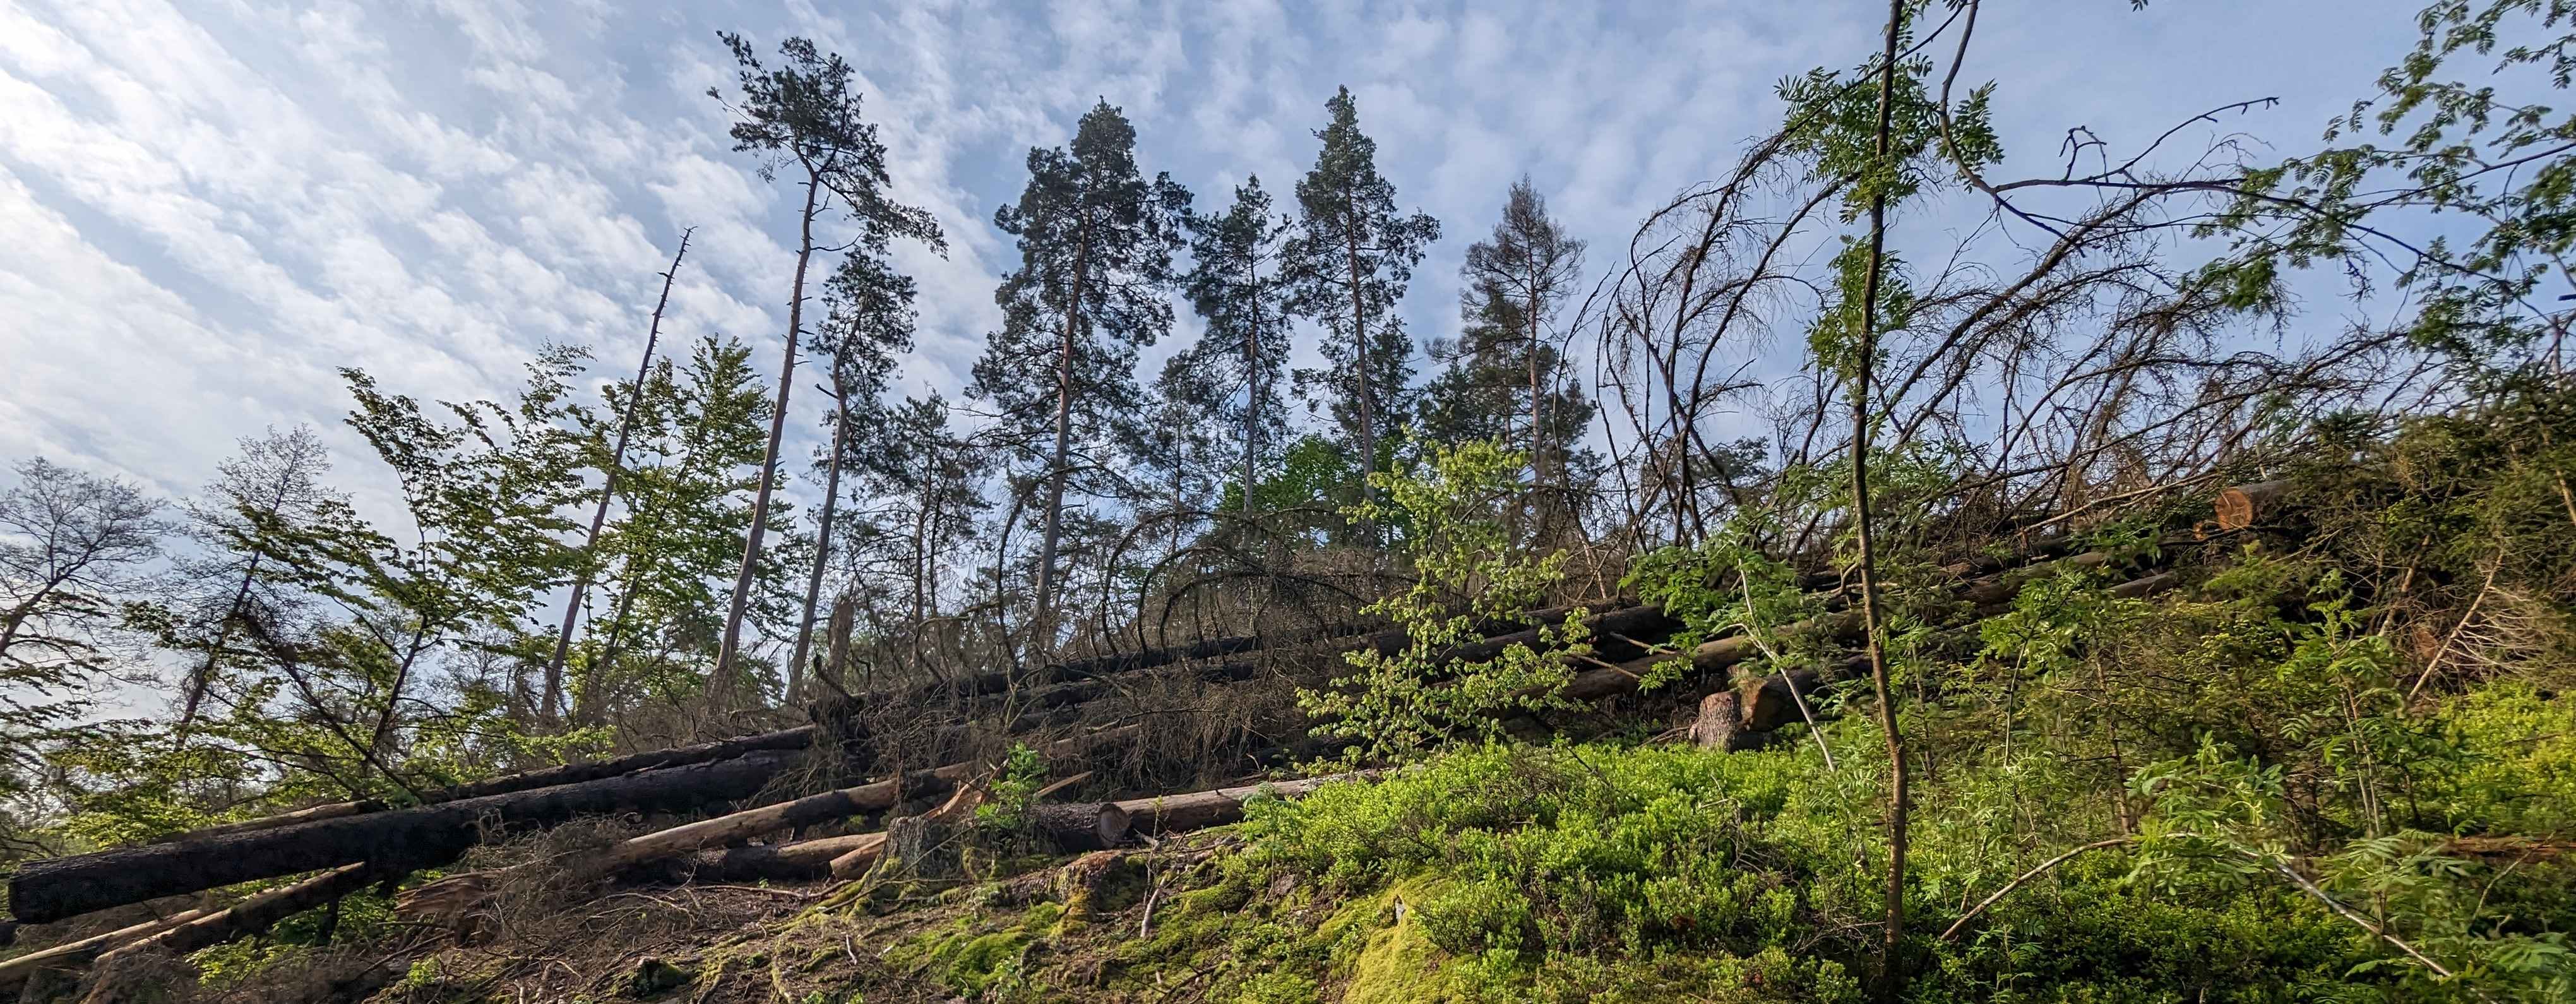 Kvůli bezpečnosti návštěvníků se musí pokácet některé suché smrky v přírodní rezervaci Údolí Doubravy